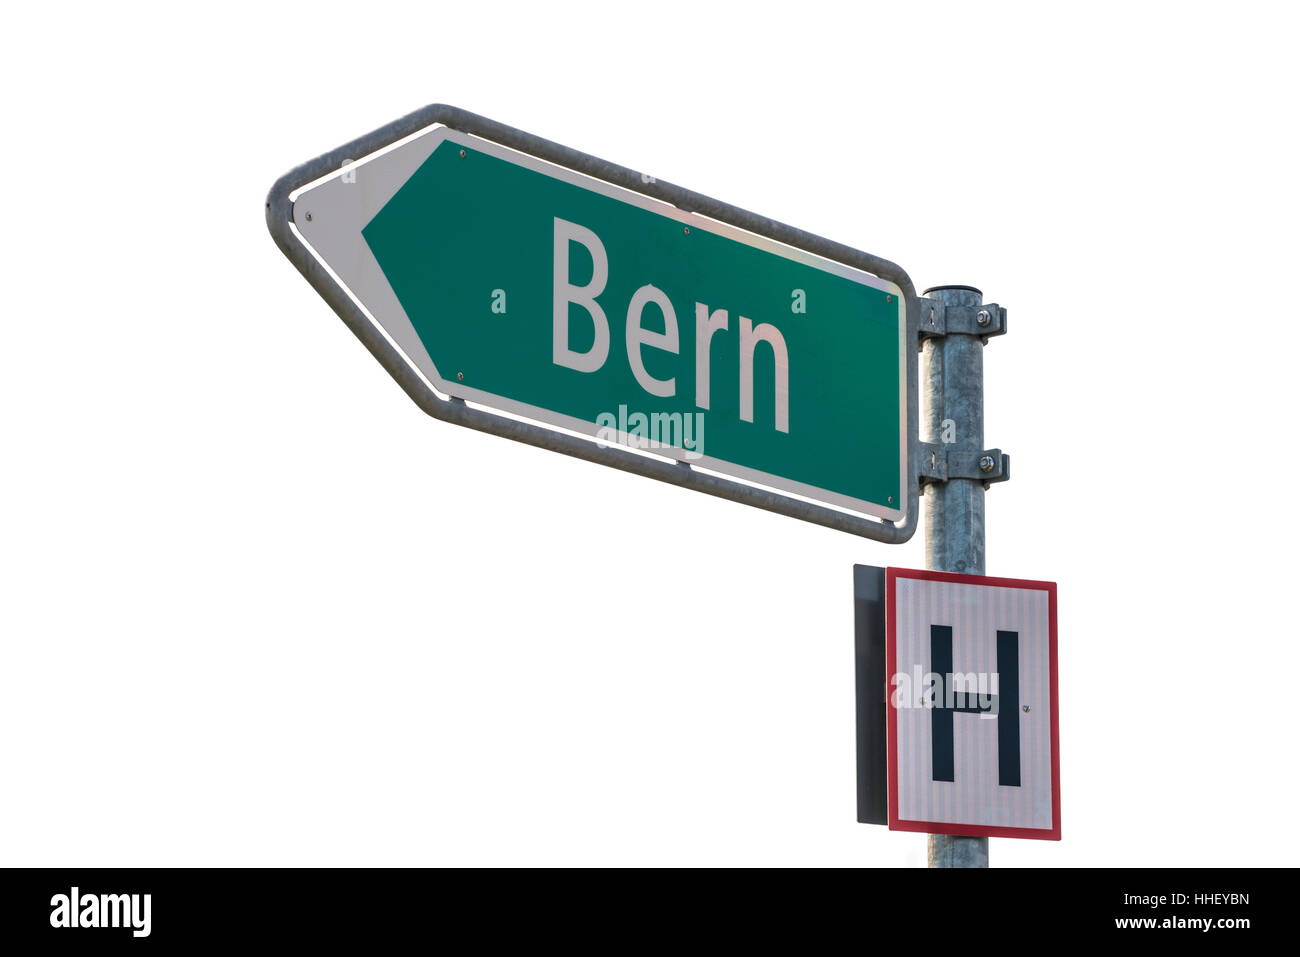 Berne signe isolé sur fond blanc. Trésor mondial city - Berne, Suisse Banque D'Images